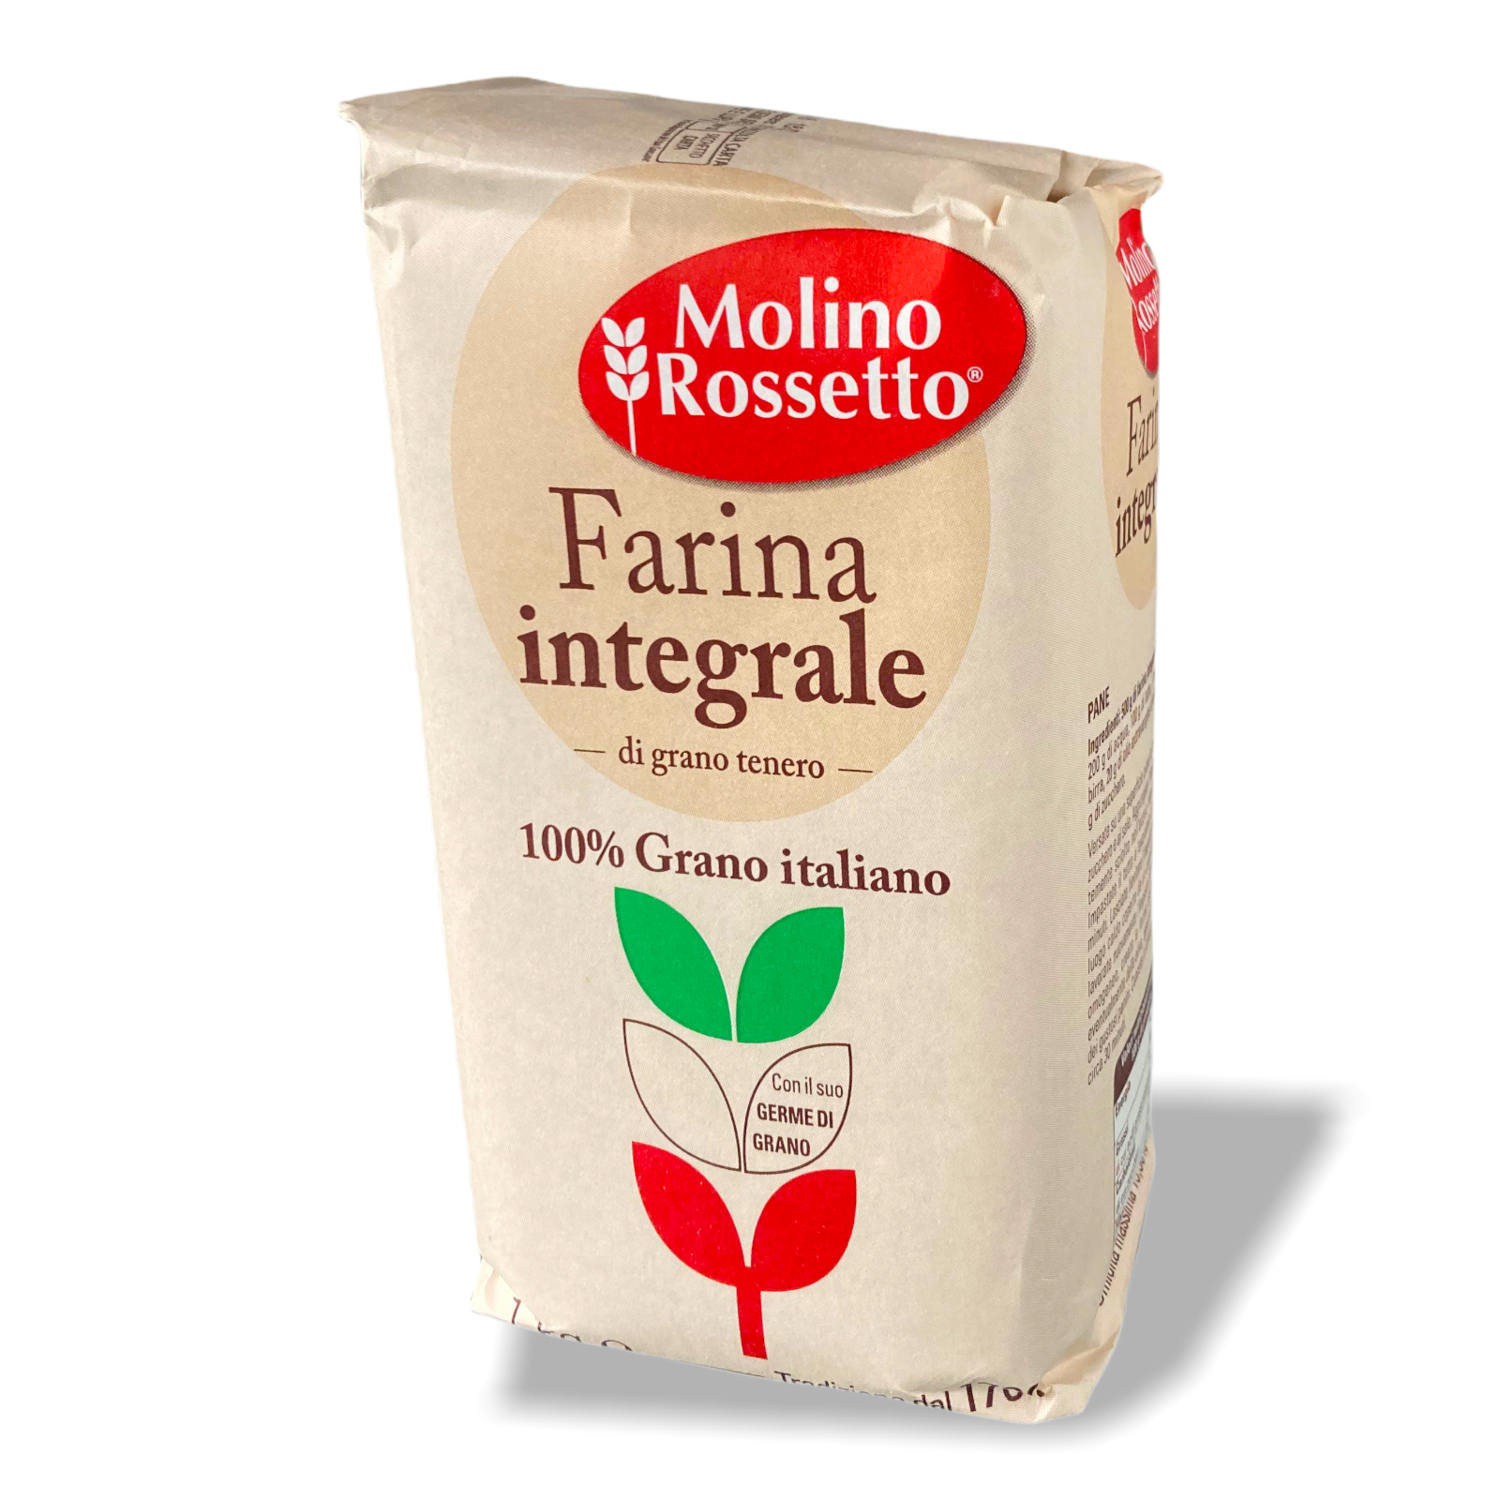 Farina Integrale Di Grano Tenero
100% Farina Italiana.
Molino Rossetto.